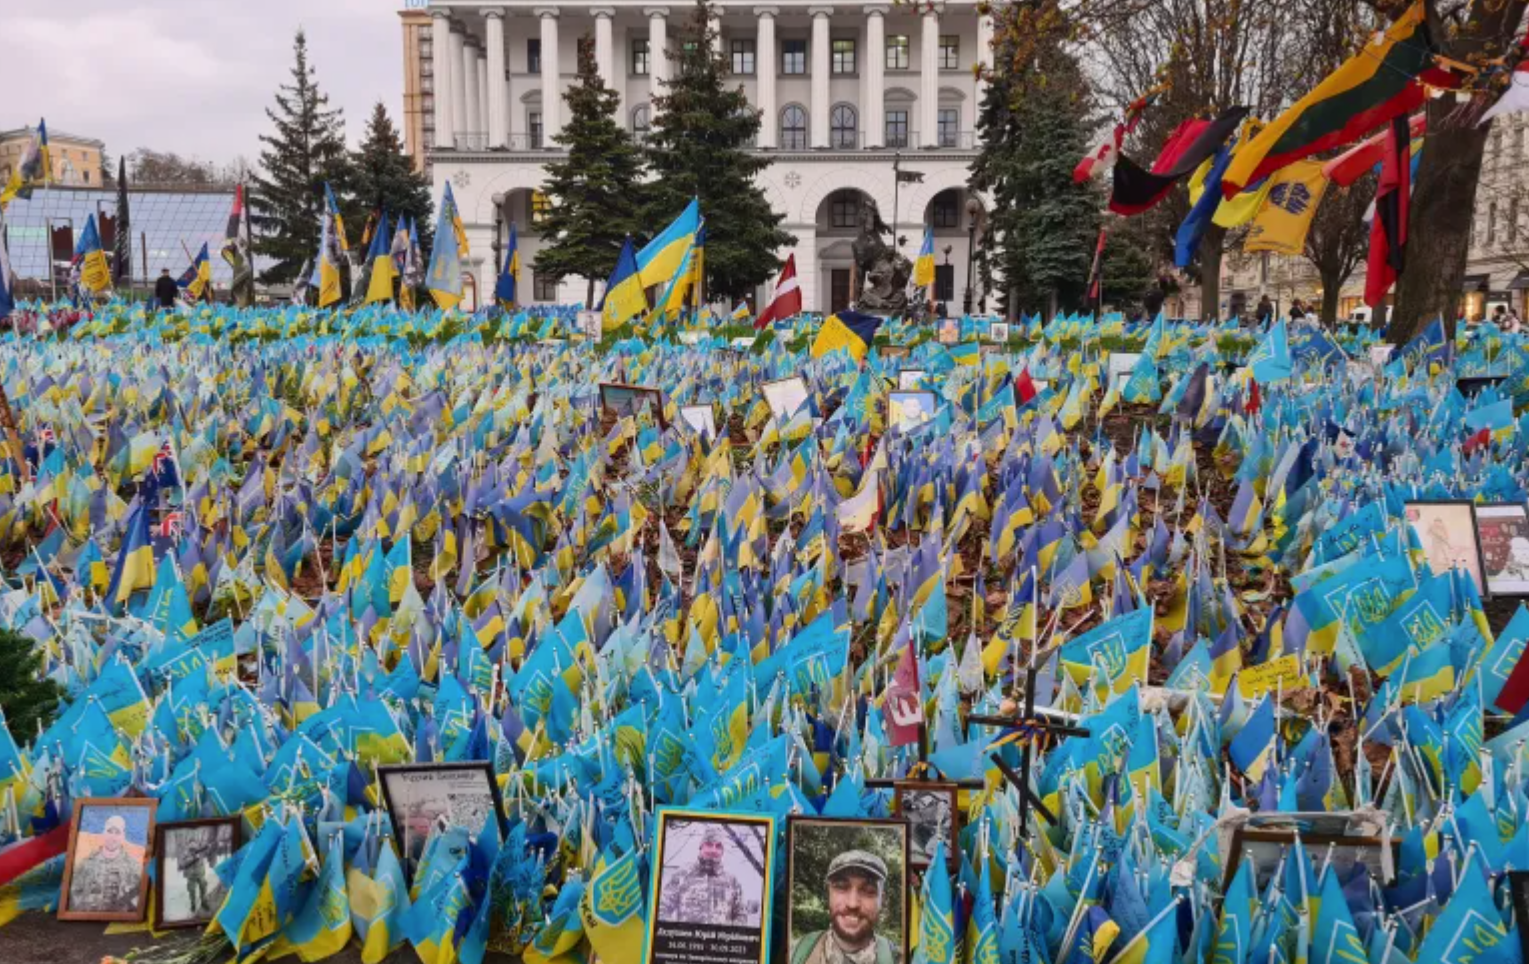 'Tham chiến tới chết': Ukraine bãi bỏ thời hạn giải ngũ, binh lính vốn mệt mỏi càng giận giữ- Ảnh 1.